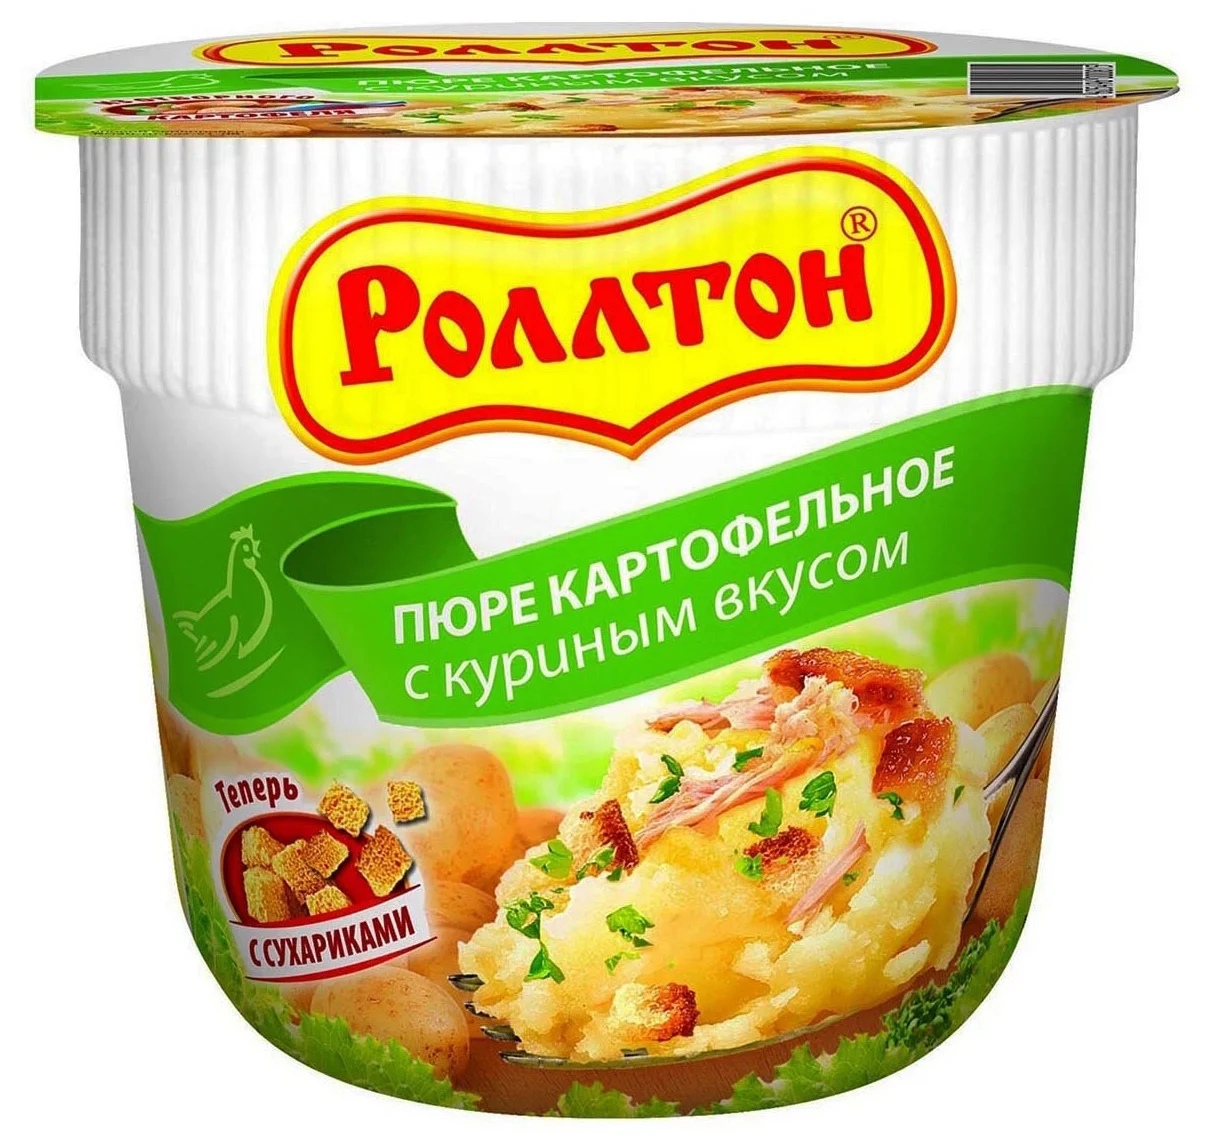 Роллтон Пюре картофельное с куриным вкусом, 40 г, рынок Рахова, ИП Щелупанов точка №10